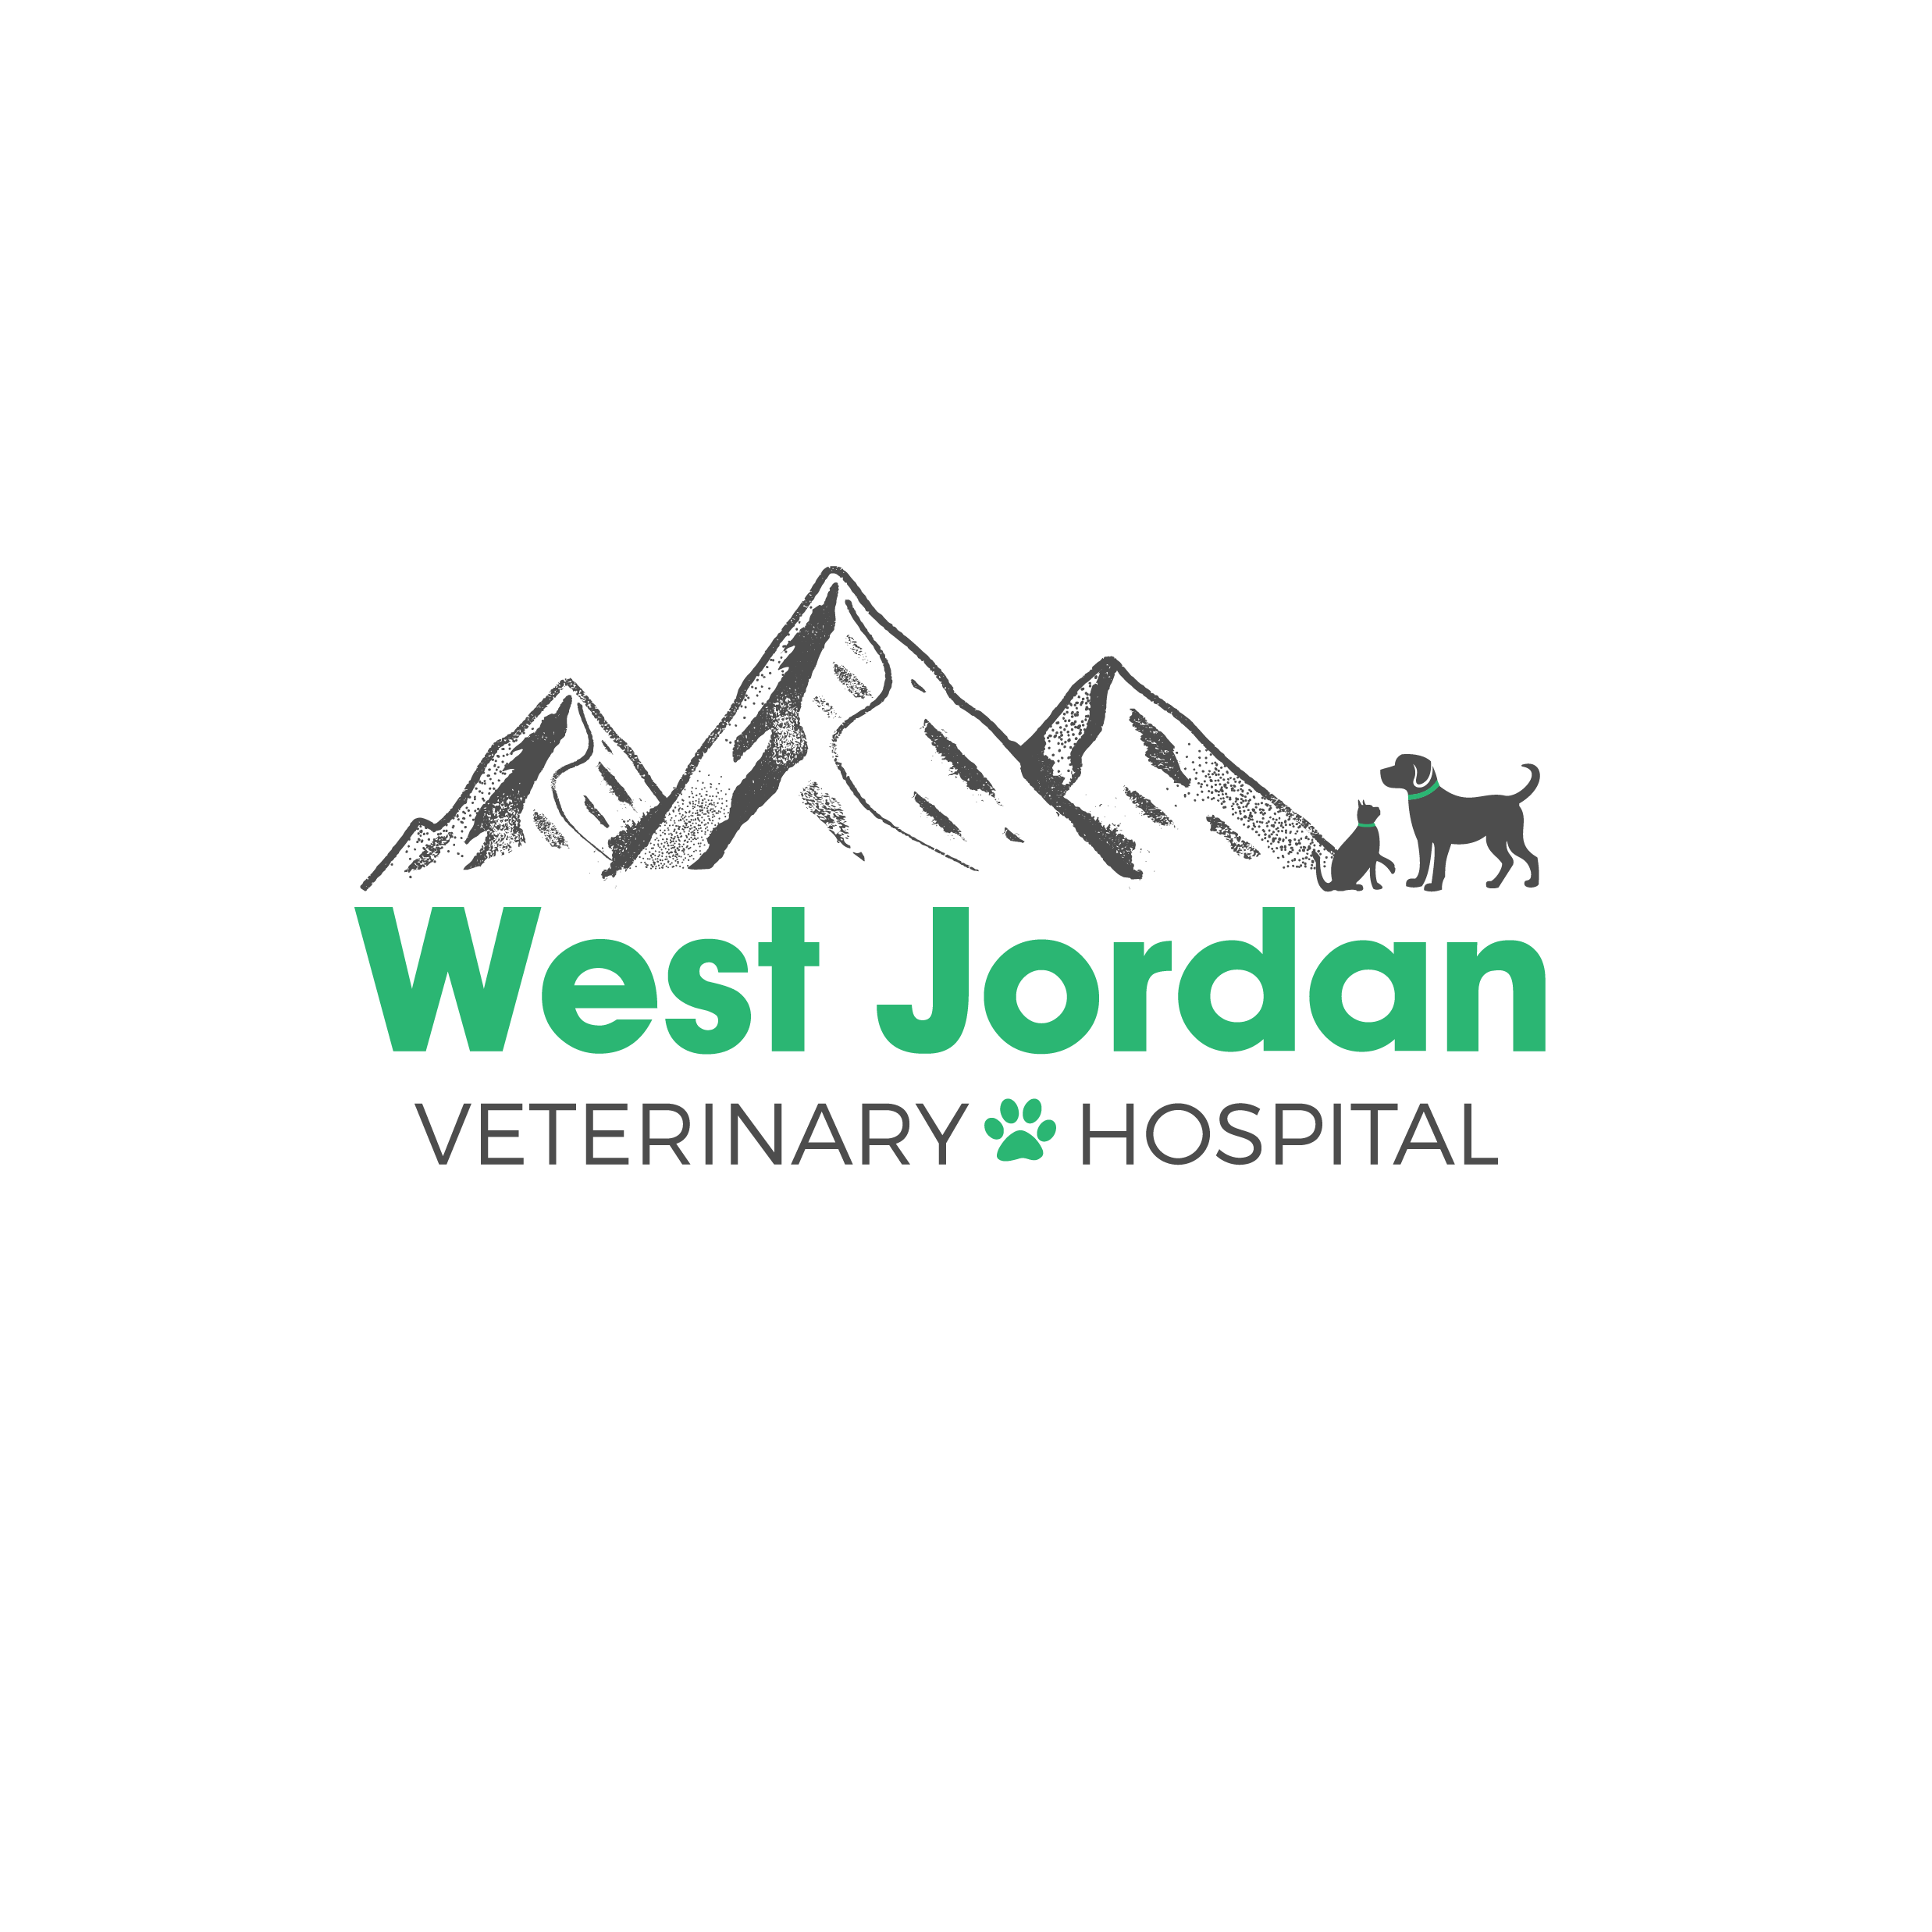 West Jordan Veterinary Hospital West Jordan (801)561-9271